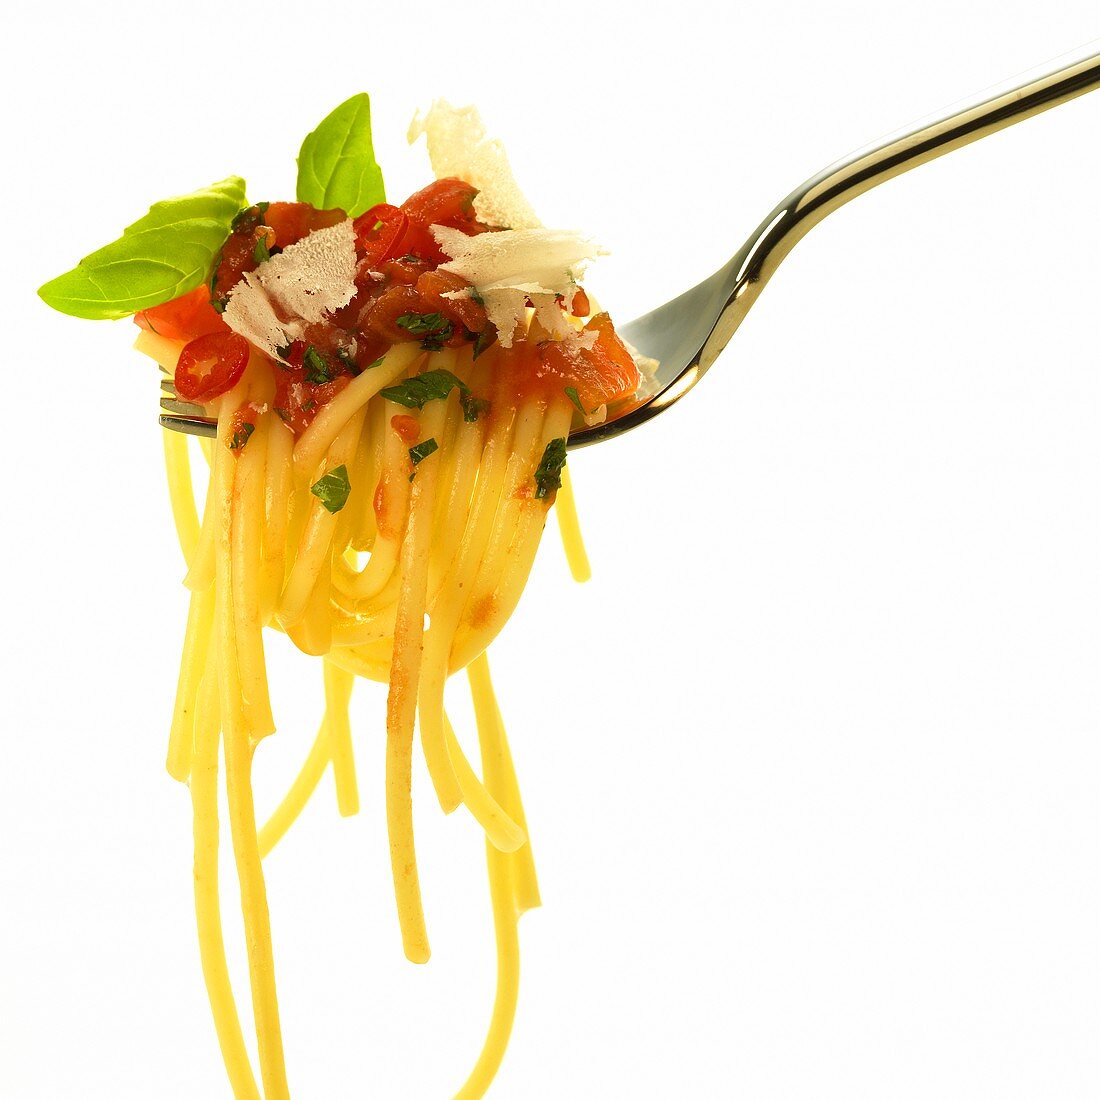 Spaghetti mit Tomaten-Chili-Sauce und Parmesan auf Gabel